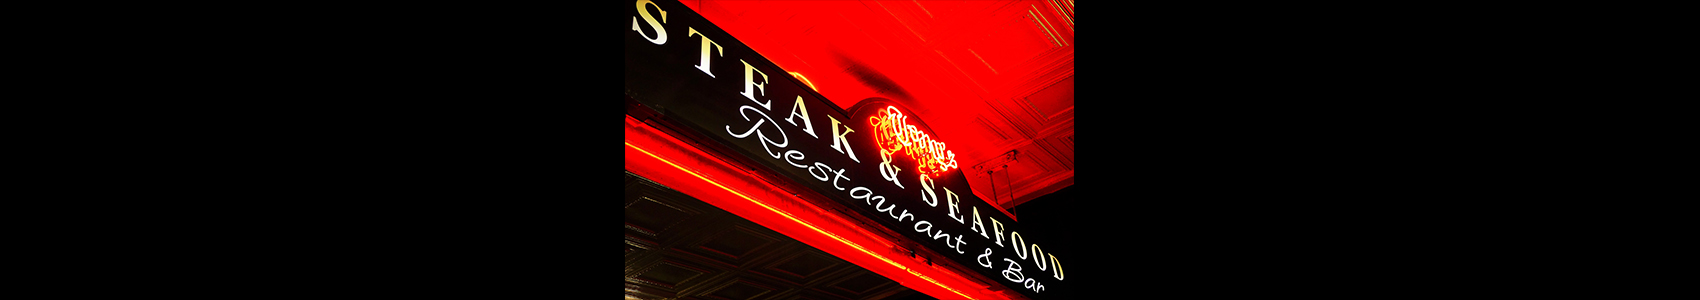 Tony's Steakhouse